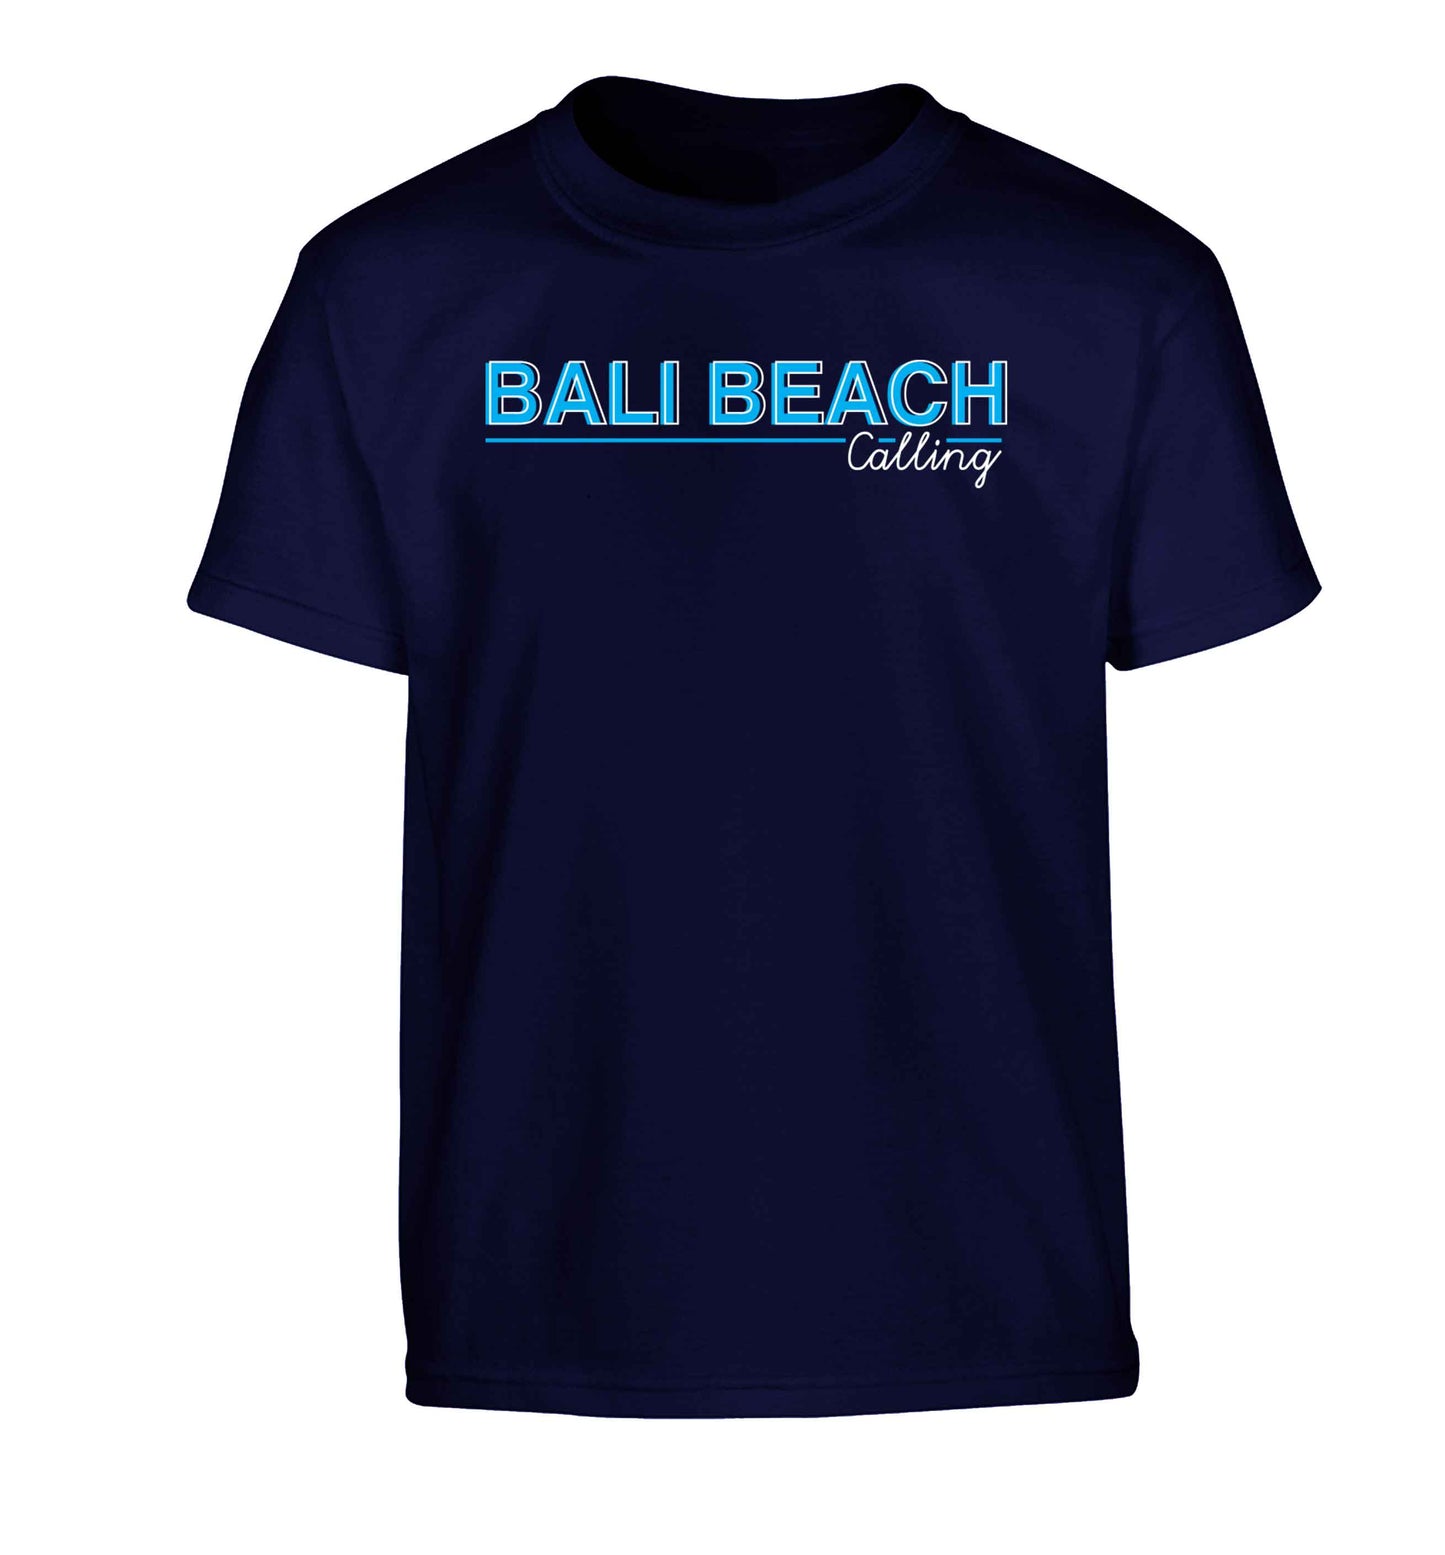 Bali beach calling Children's navy Tshirt 12-13 Years